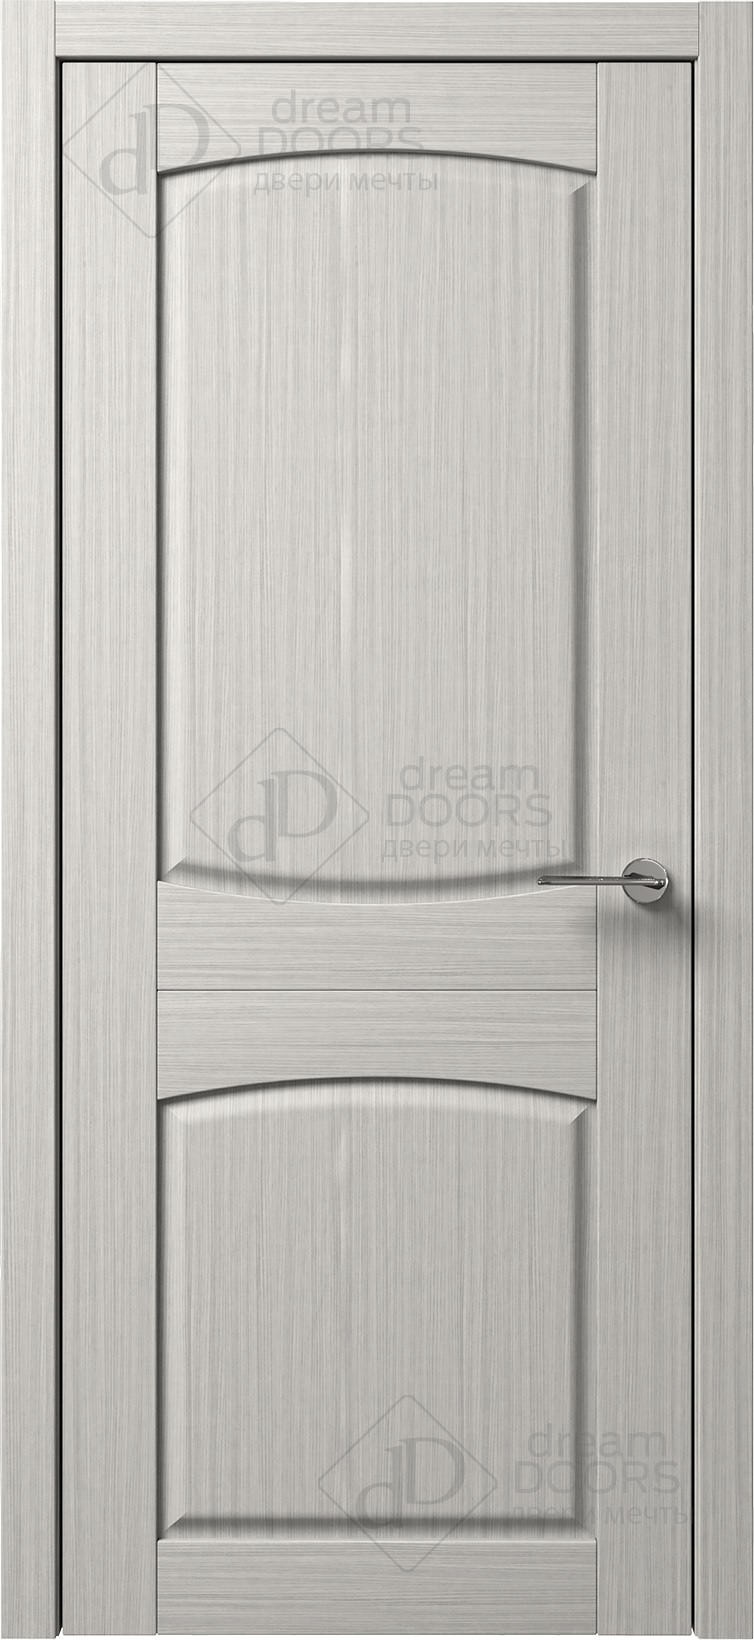 Dream Doors Межкомнатная дверь B4-3, арт. 5557 - фото №1